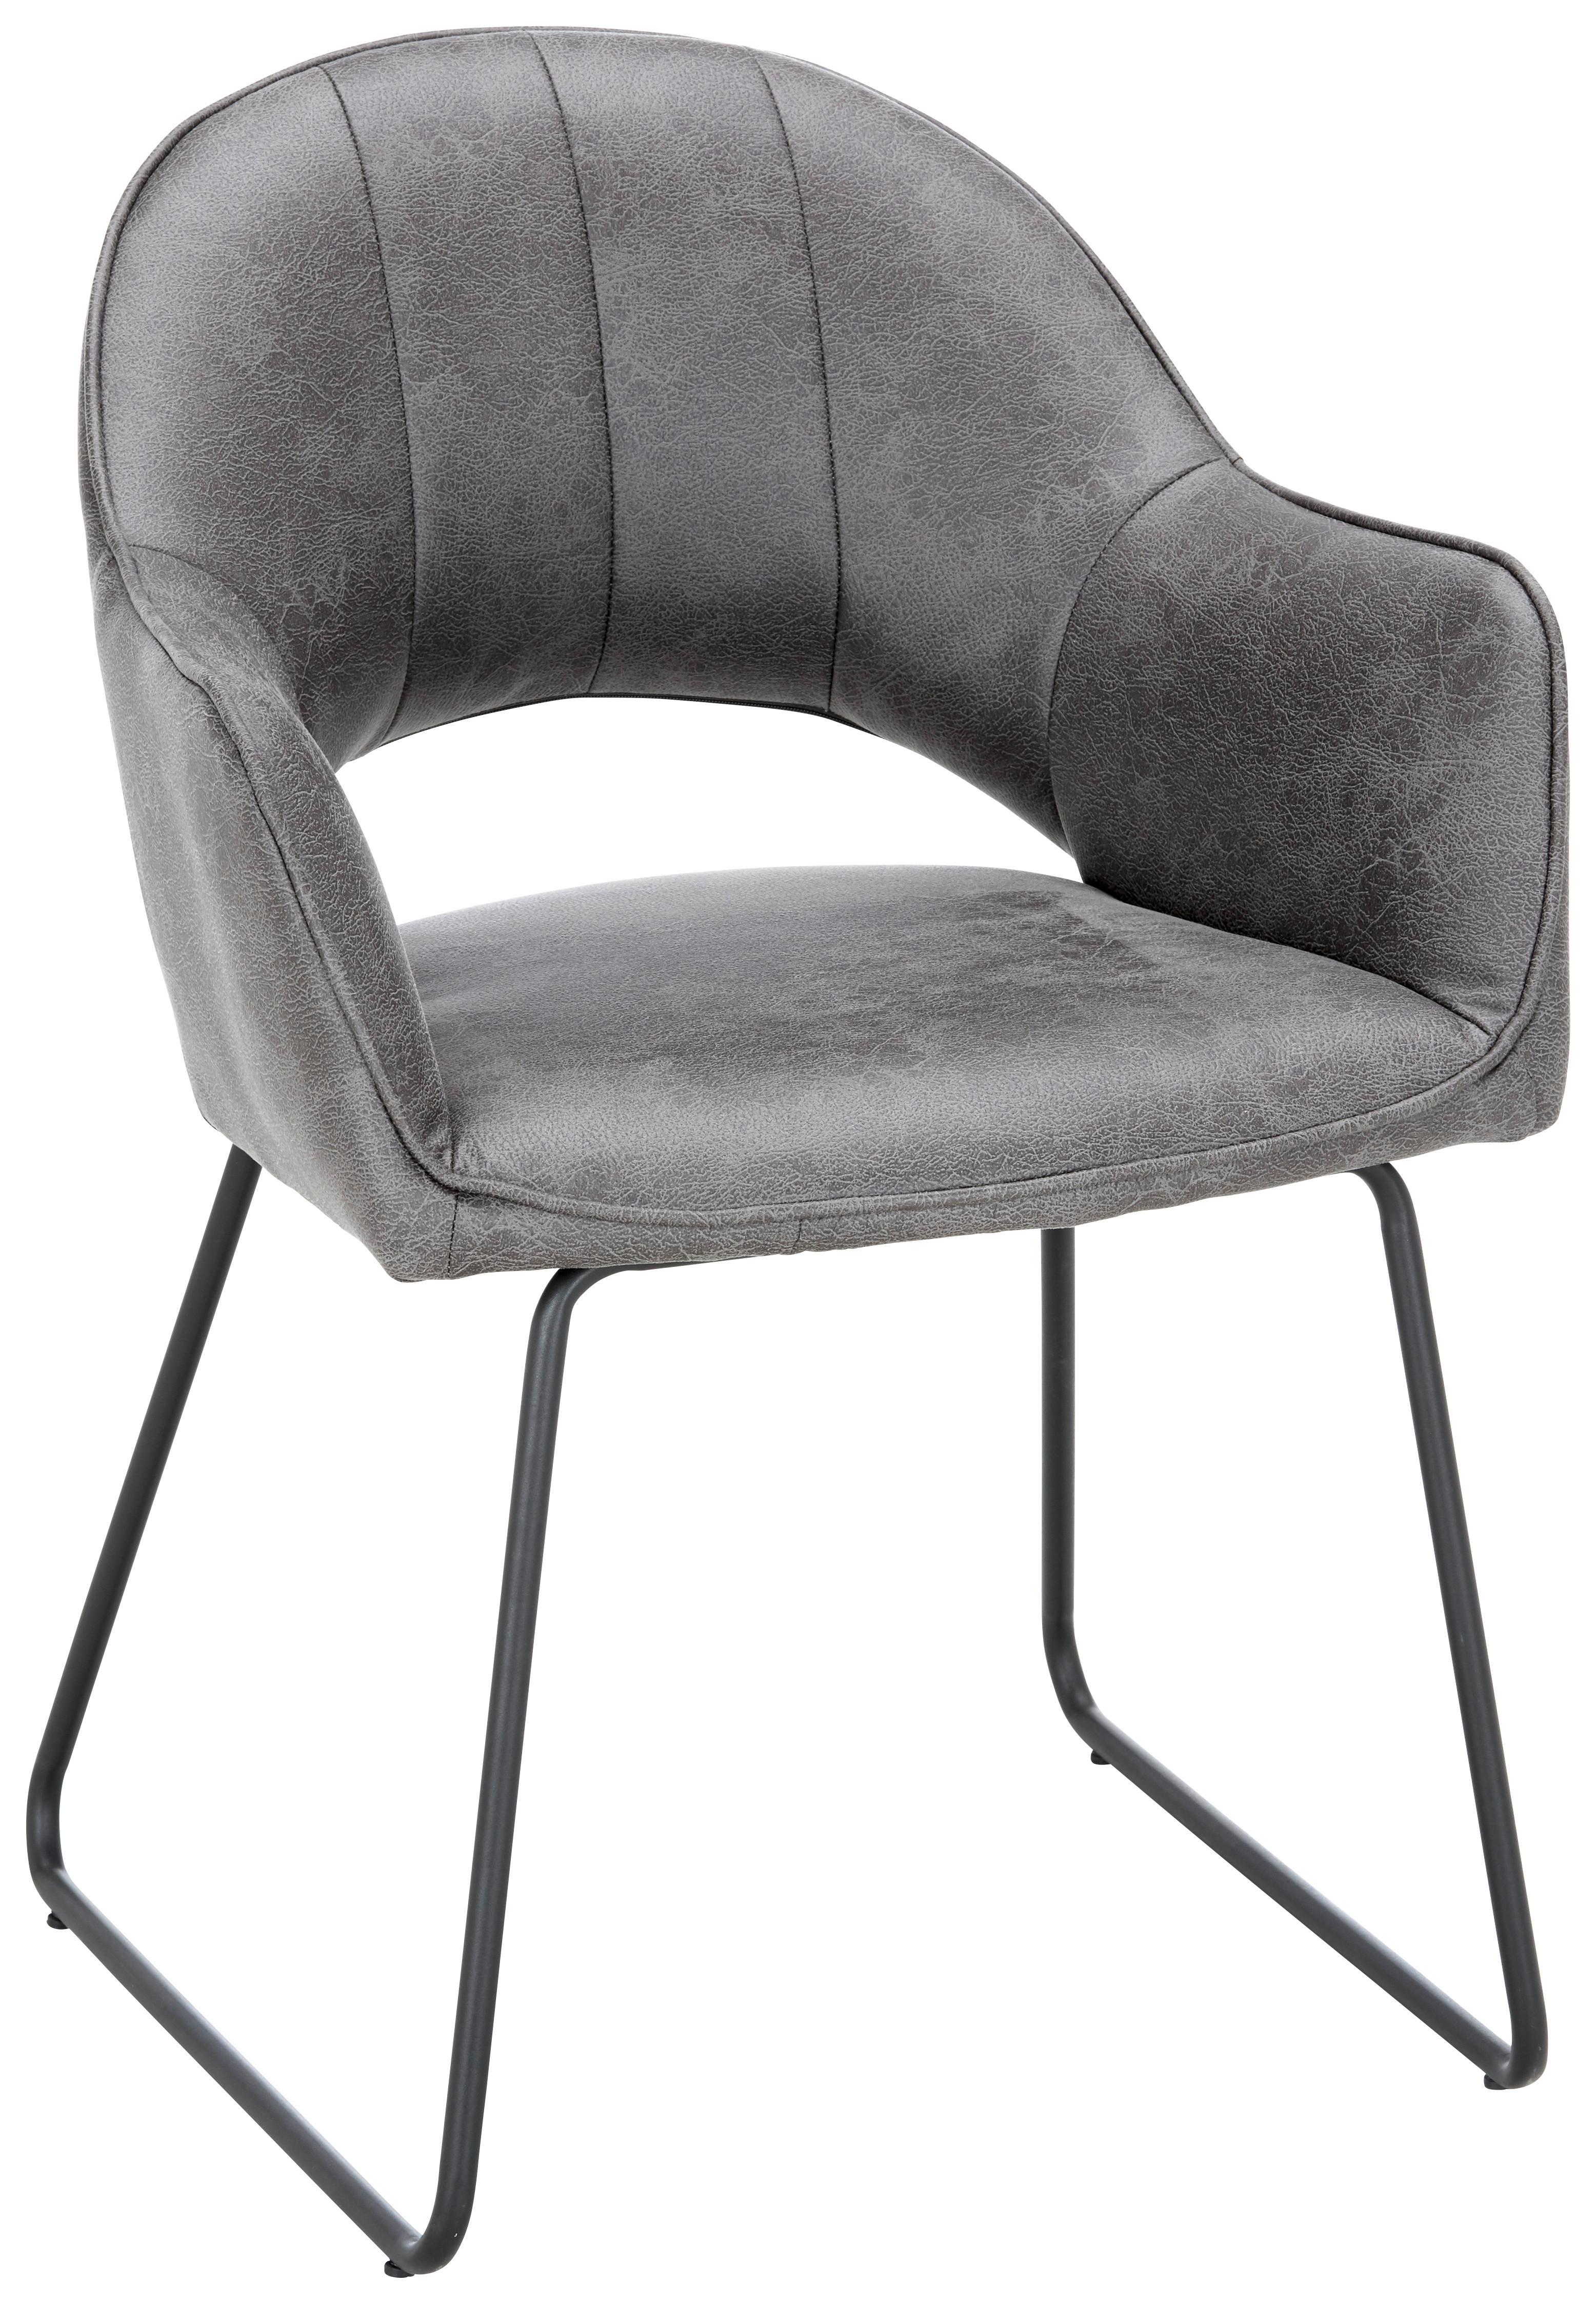 Stuhl in Anthrazit/Schwarz - Anthrazit/Schwarz, MODERN, Textil/Metall (60/84/62cm) - Modern Living